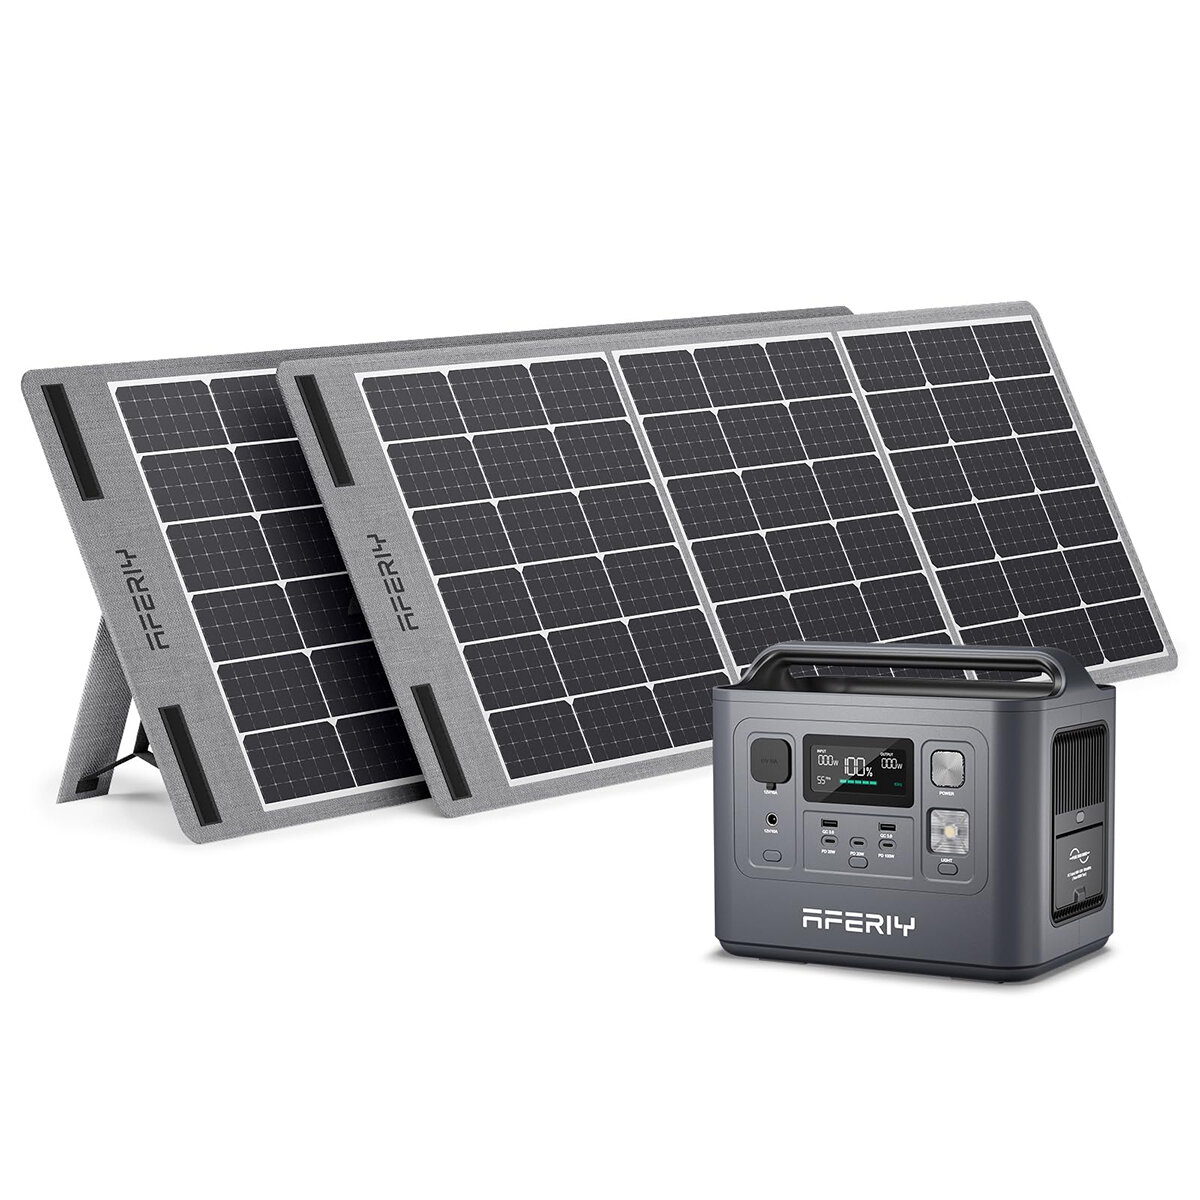 [ΕΕ Άμεση] Αφερίι P010 800W 512Wh Φορητός σταθμός ενέργειας LiFePO4 +2 * Πάνελ ηλιακής ενέργειας S100 100W, UPS Καθαρή ημιτονική κυματομορφή Camping RV Σπίτι Έκτακτης ανάγκης Φορητός Ηλιακός Γεννήτρια